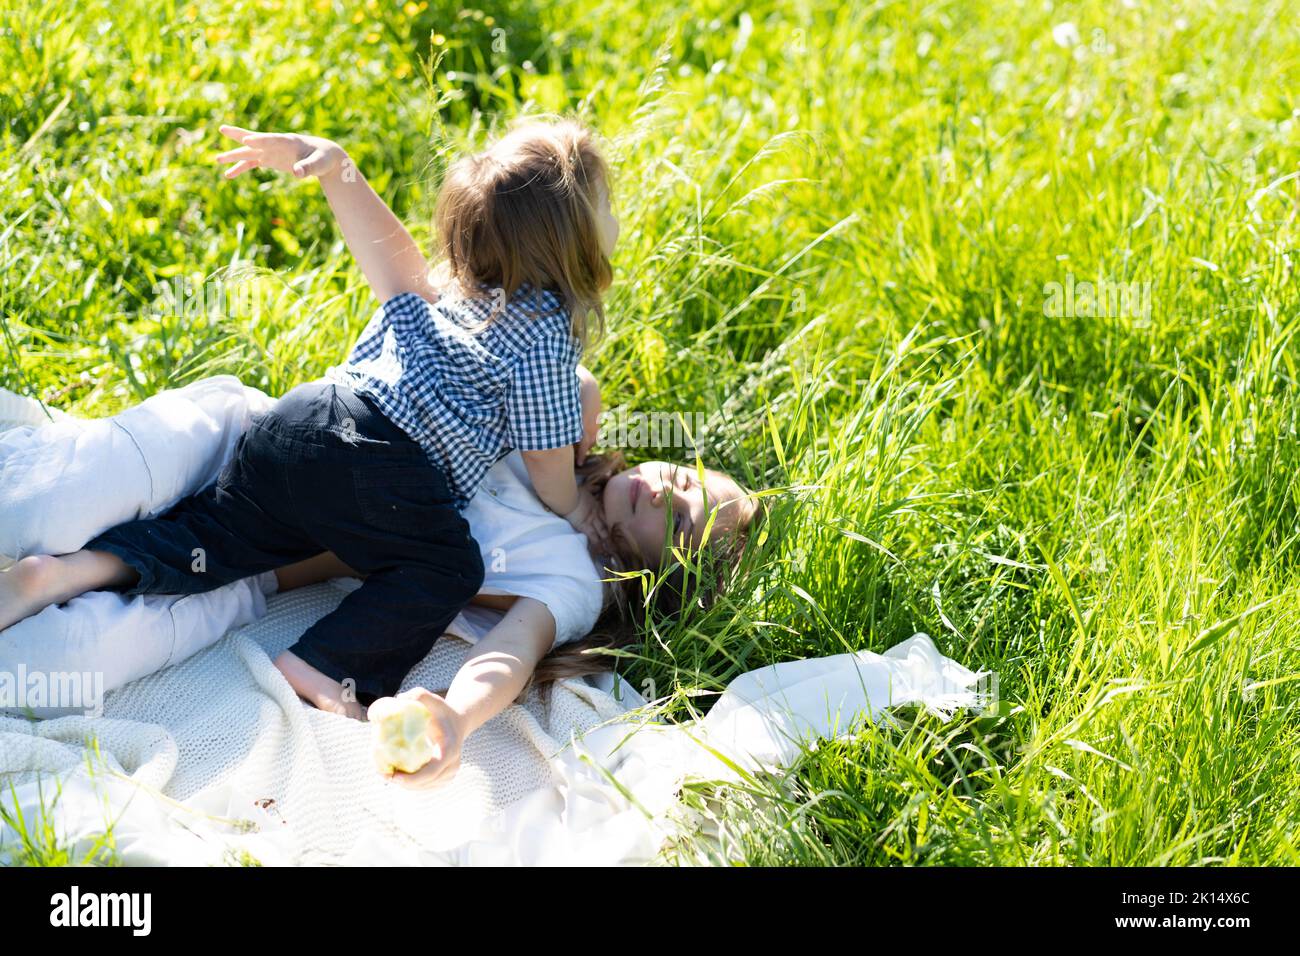 Bruder und Schwester umarmen und lachen fröhlich, liegen auf dem grünen Gras. Die Sonne scheint, die Kinder sind unbeschwert glücklich. Das Konzept eines glücklichen Familienlebens und der Bindung. Speicherplatz kopieren. Stockfoto